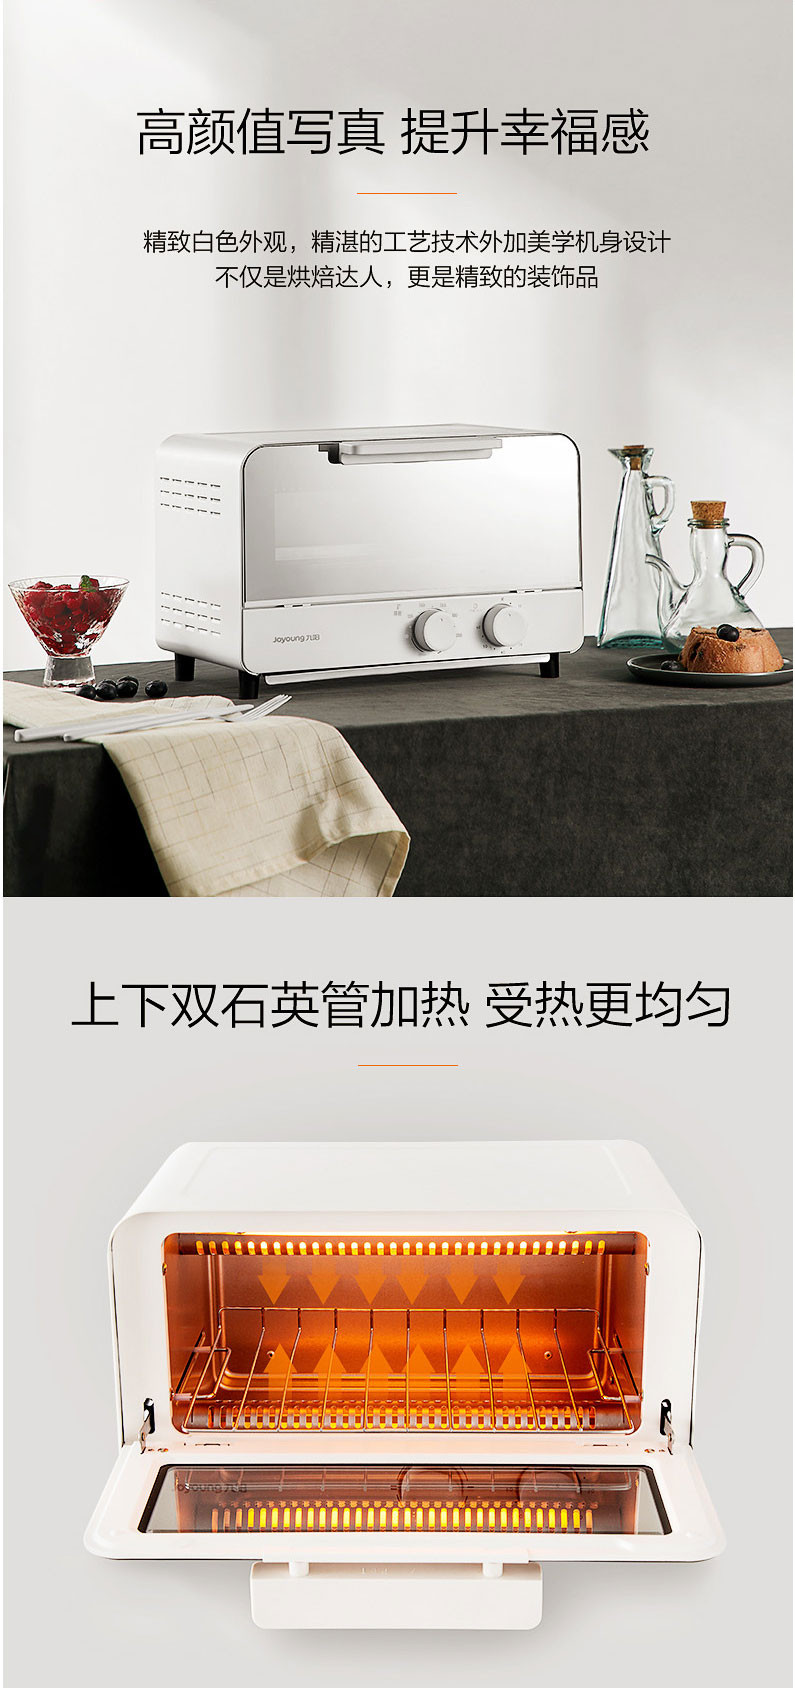 九阳/Joyoung KX12-J81 电烤箱上下独立温控 精准定时 12L容量